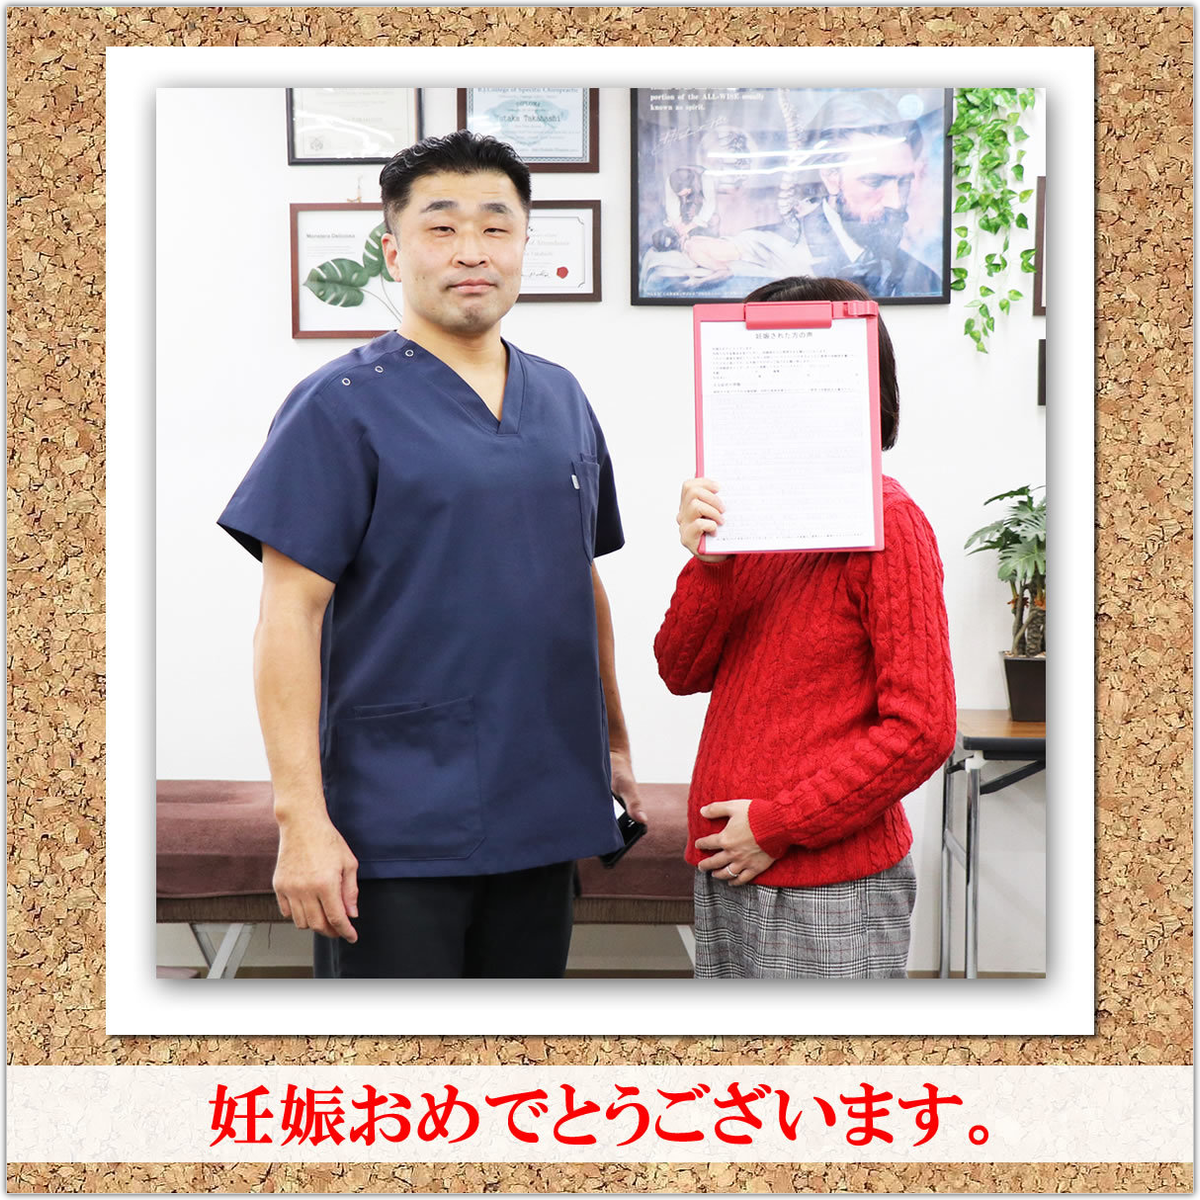 神奈川不妊治療センター式 不妊整体で妊娠された方の声。不妊専門病院との併用も可能。